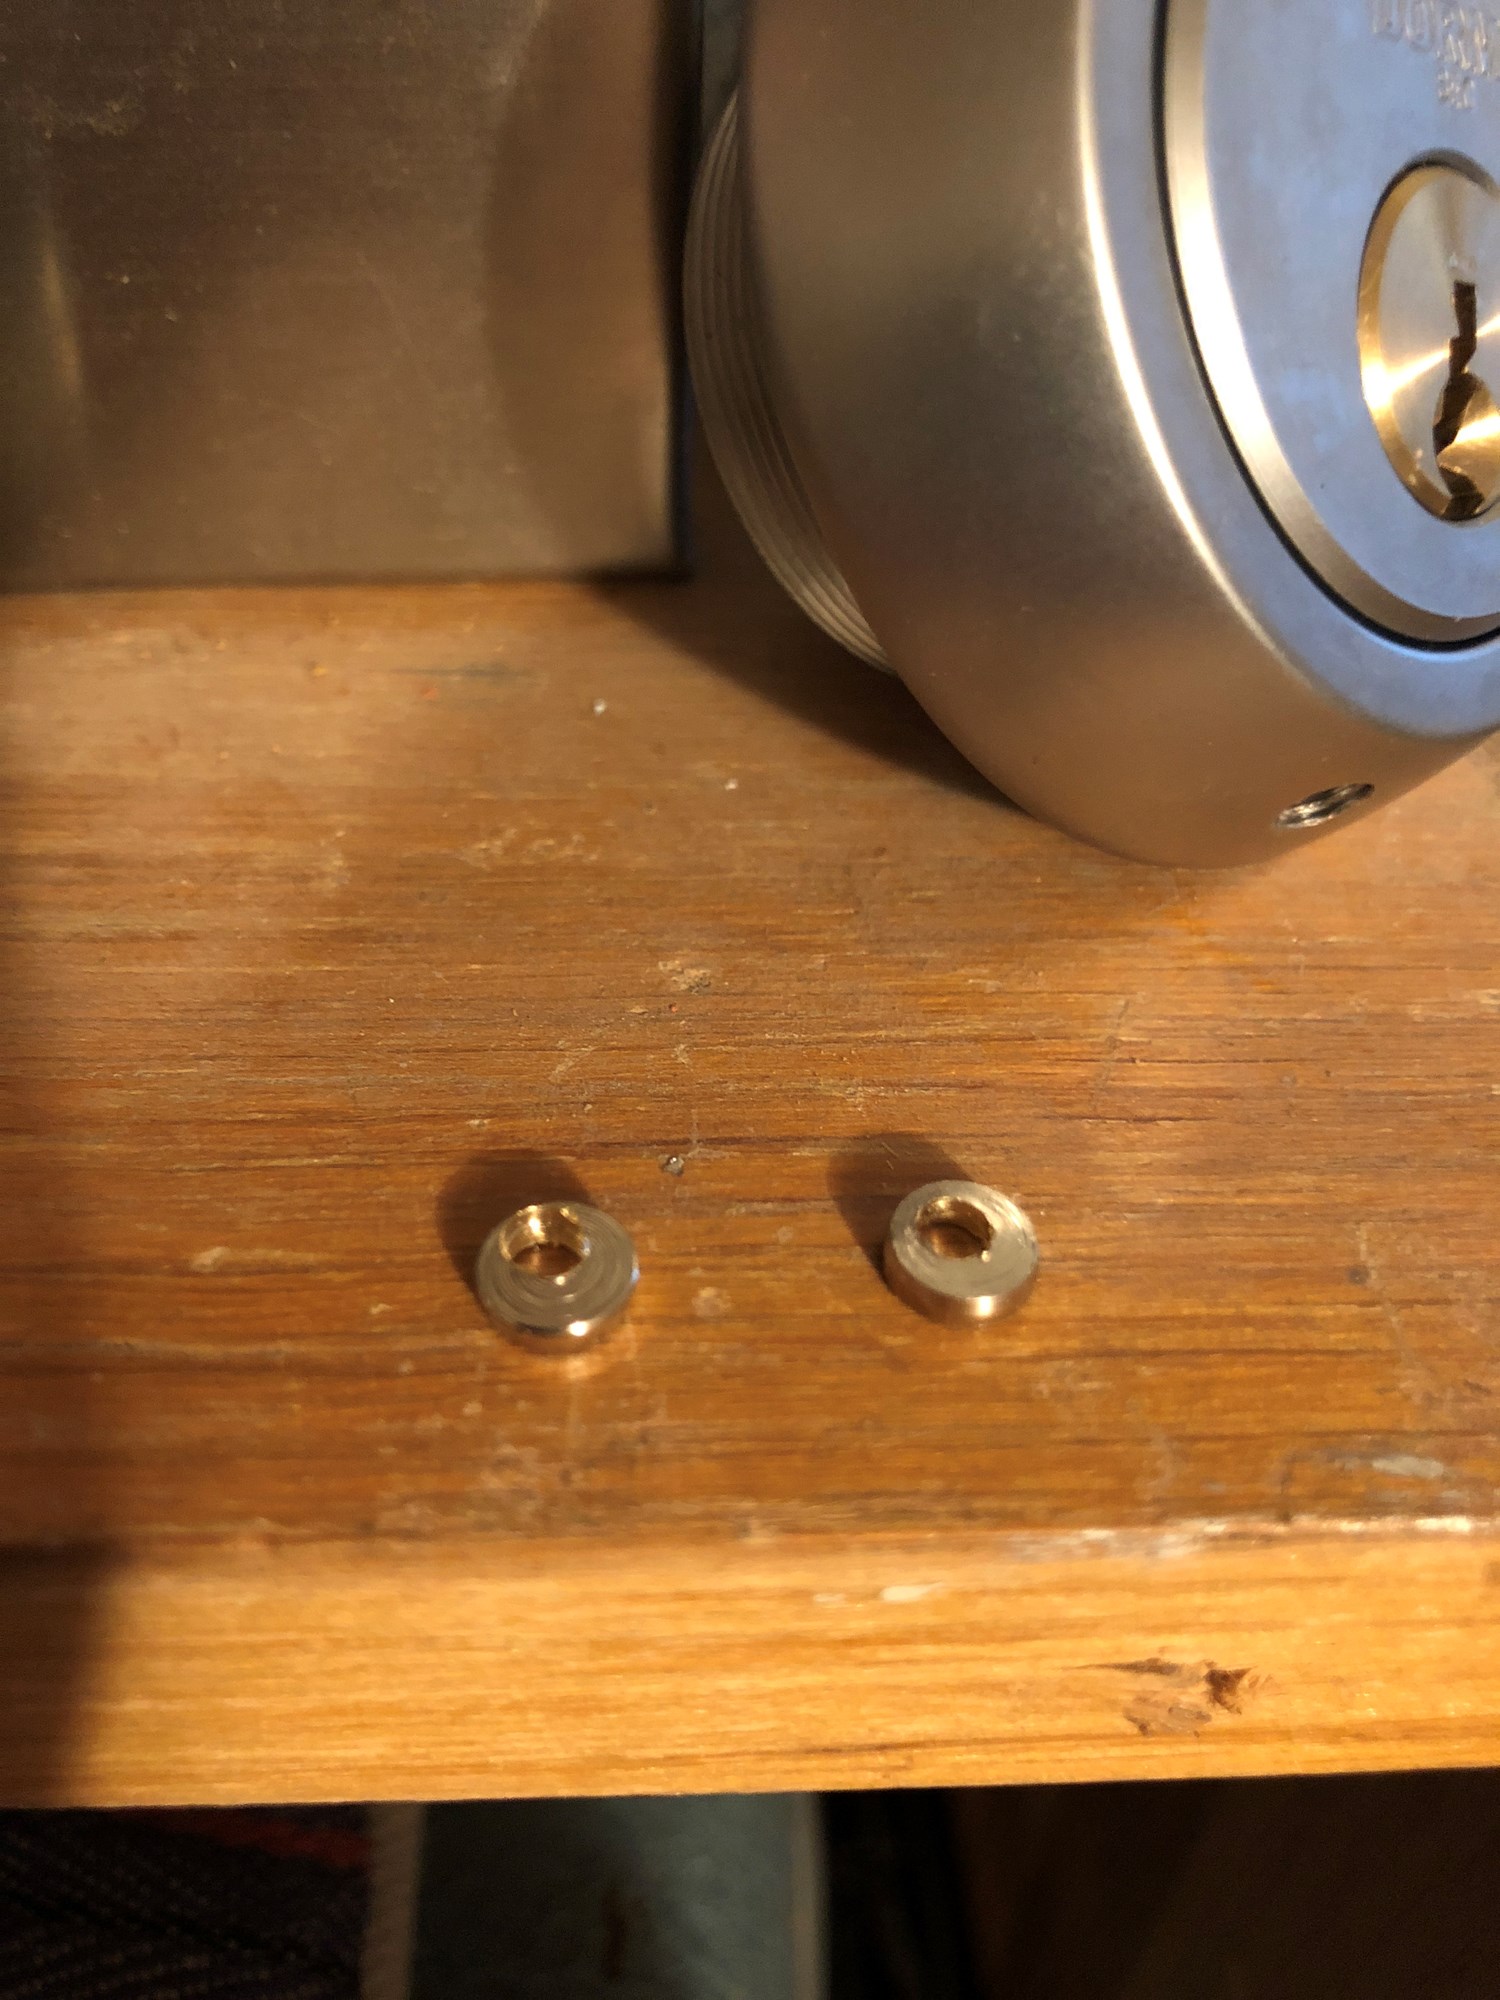 Hvordan demonterer jeg denne låsesylinderen? - image.jpg - JonB